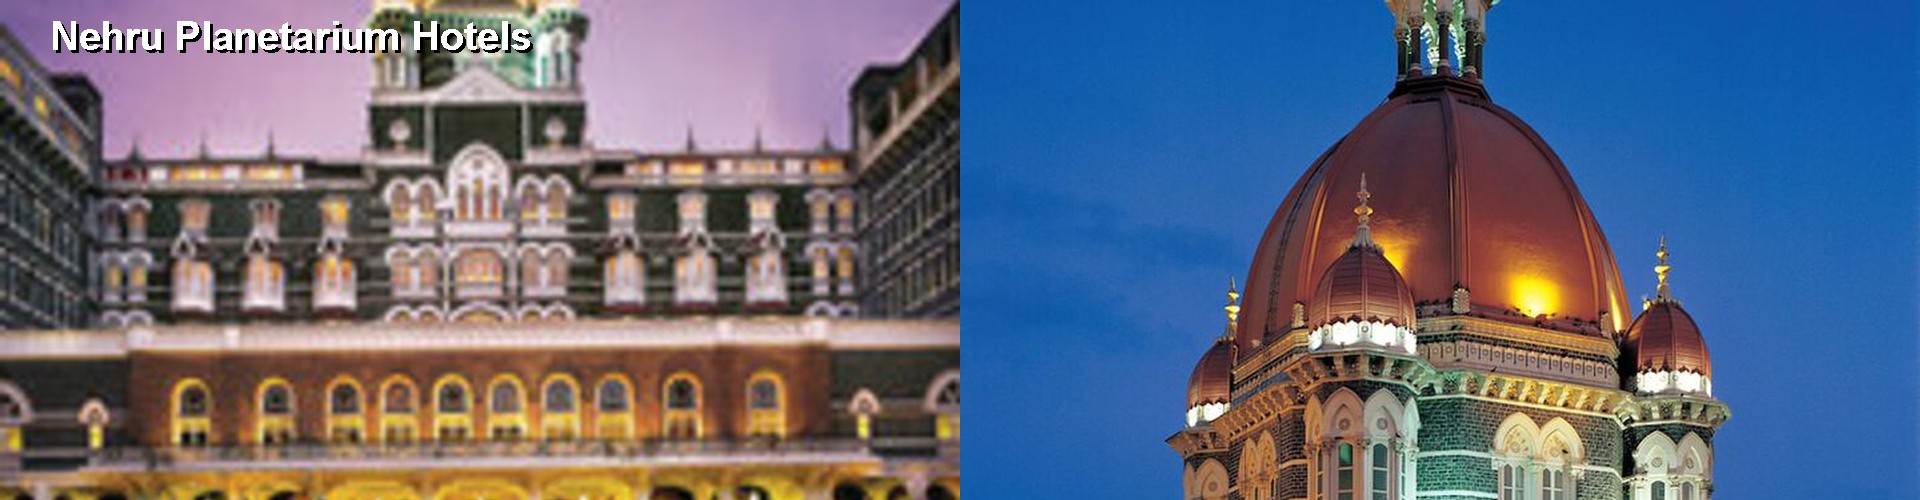 5 Best Hotels near Nehru Planetarium